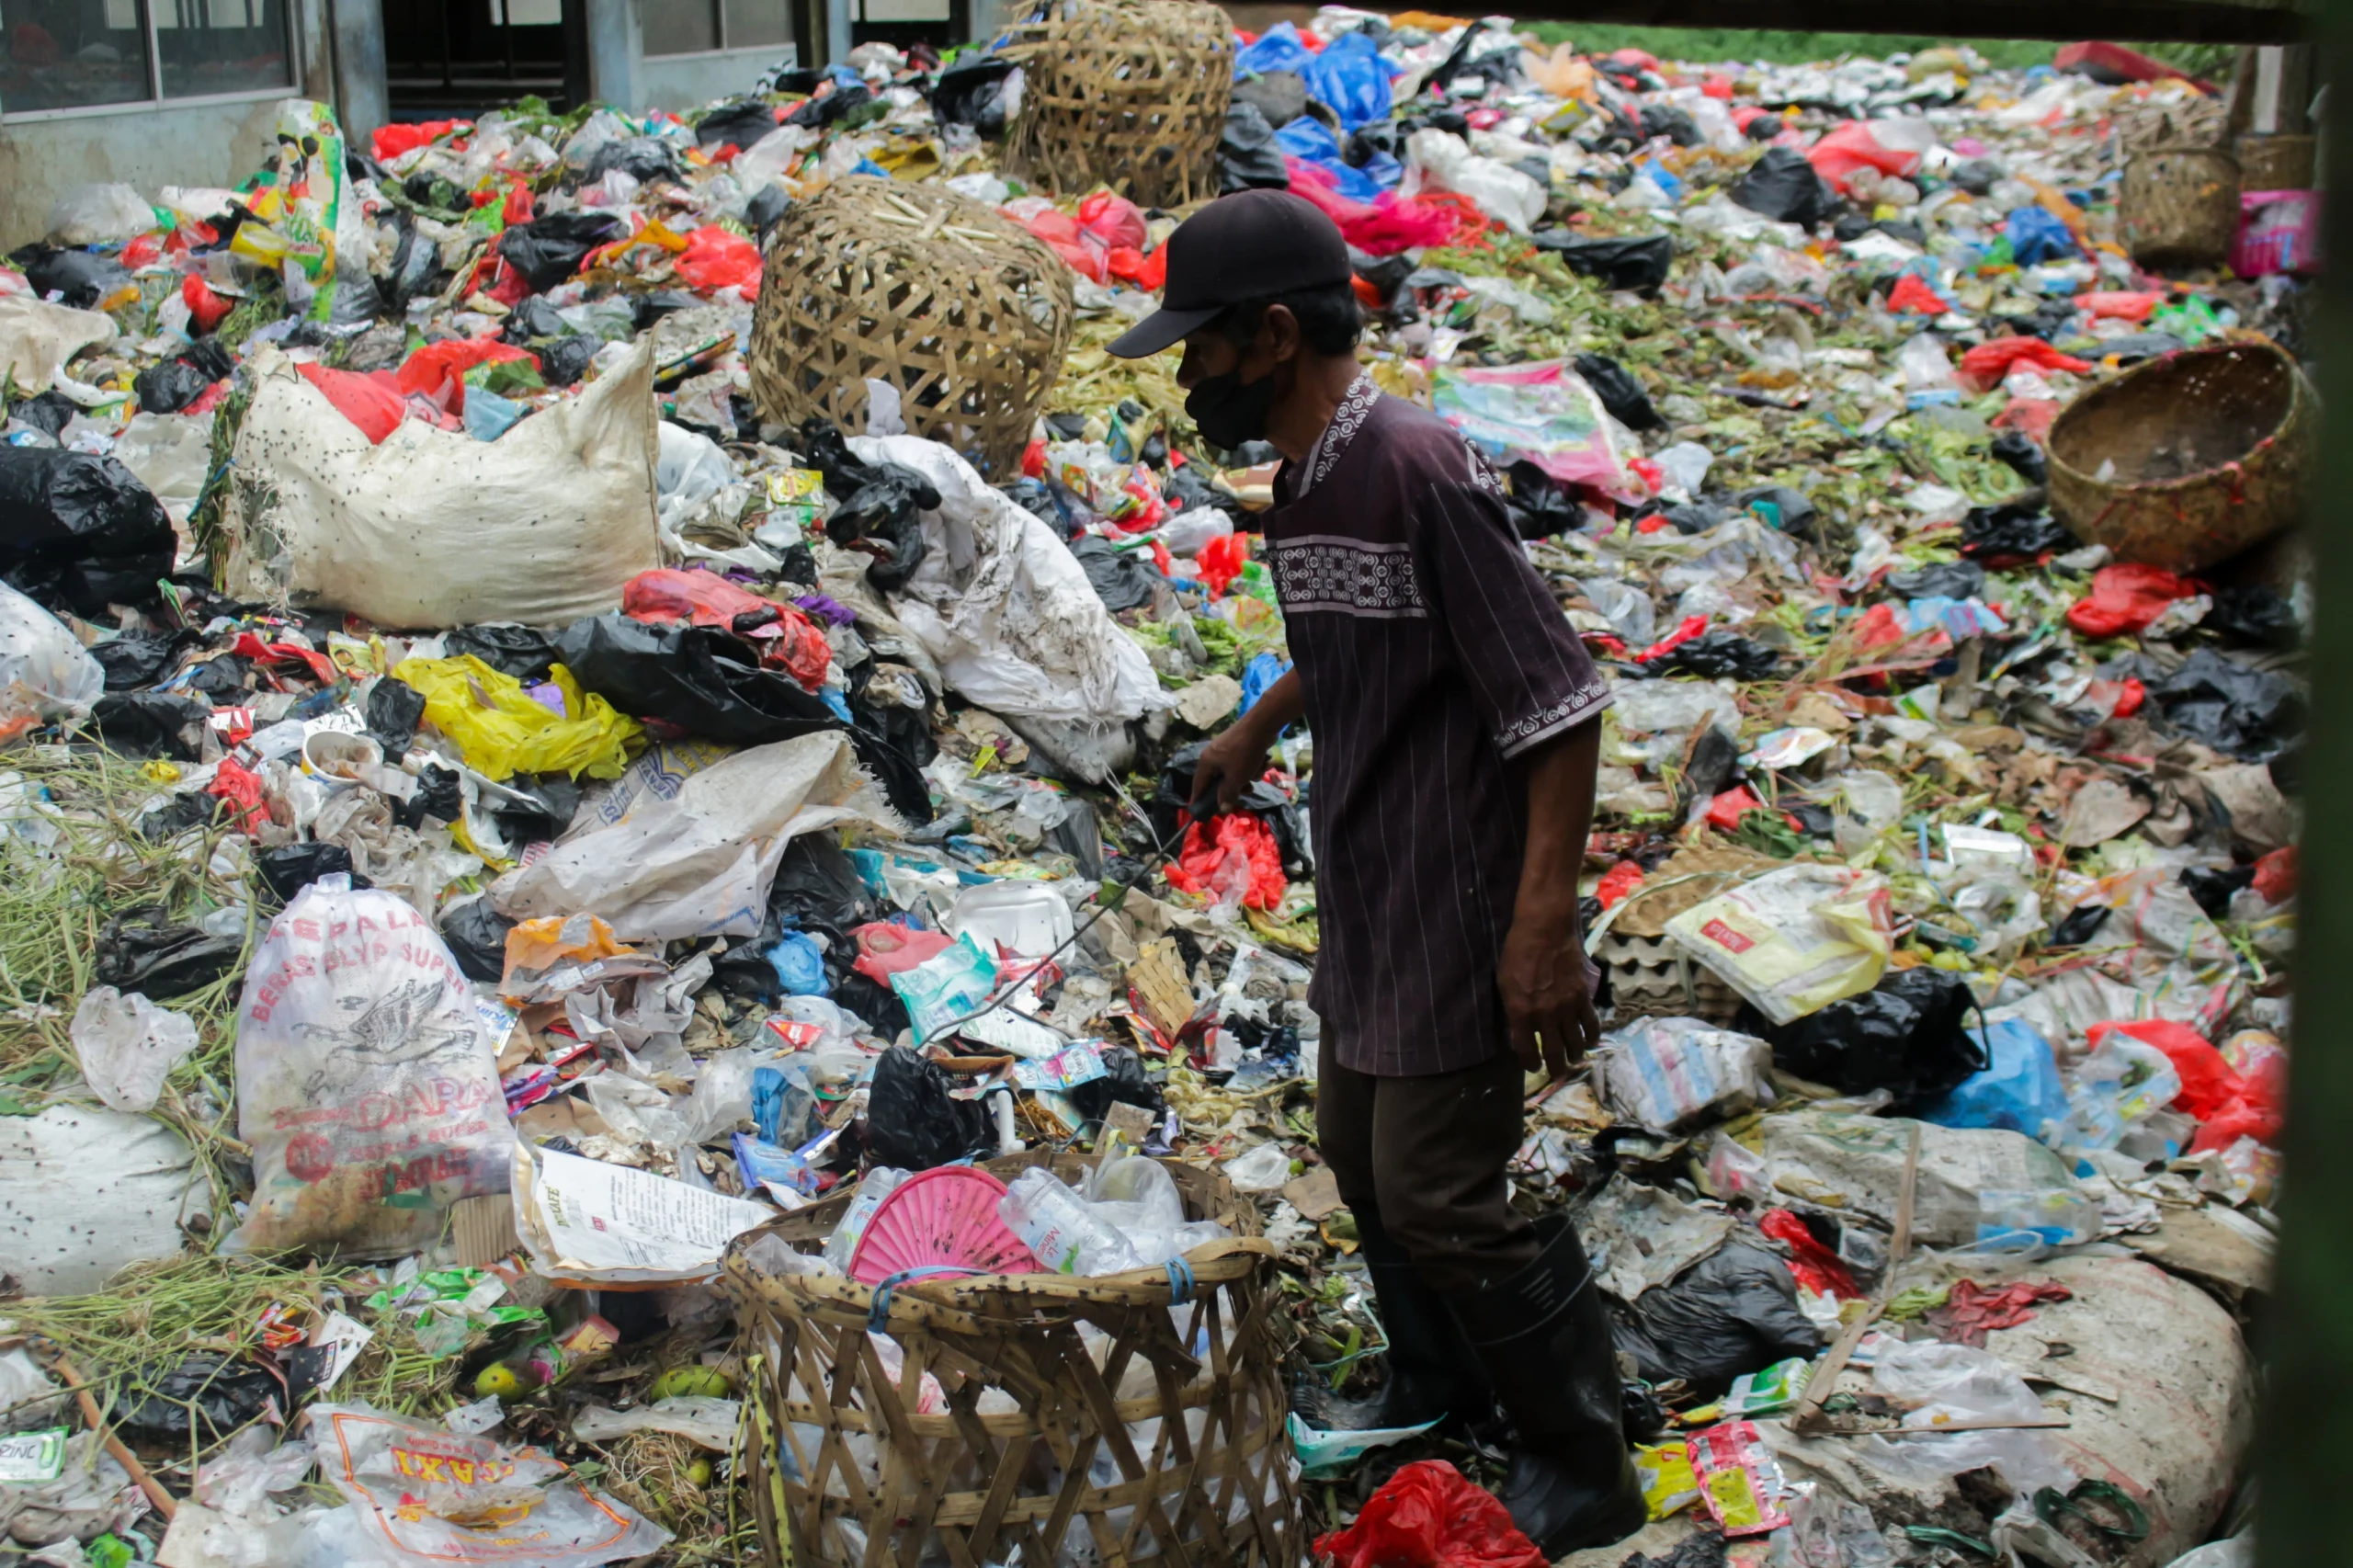 Ilustrasi: Seorang pria tengah berada di atas tumpukan sampah Pasar Sehat Cileunyi, Kabupaten Bandung. (Pandu Muslim/Jabar Ekspres)